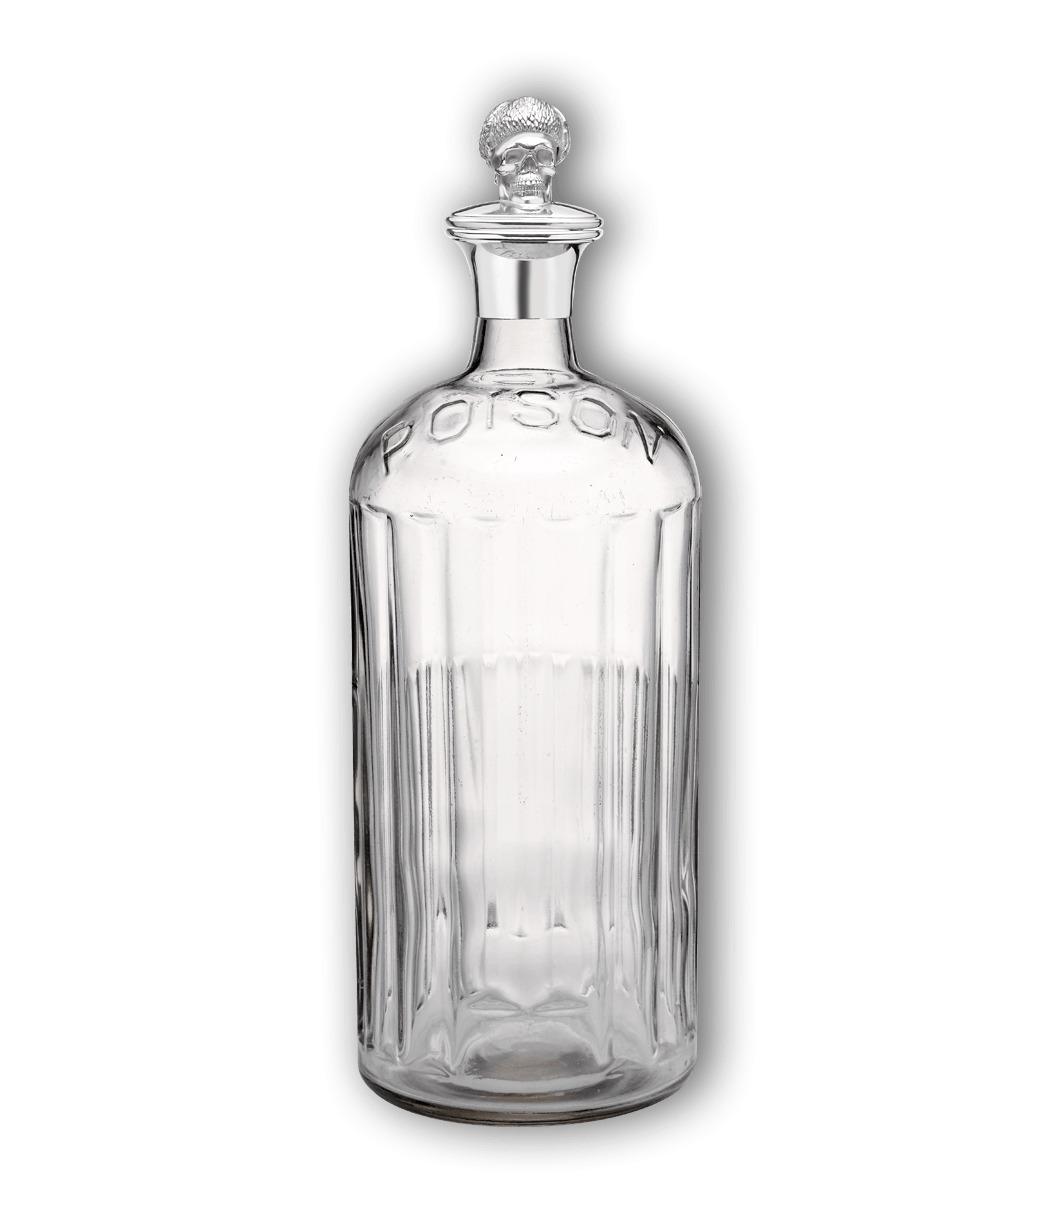 Vintage Poison Empty Bottle png transparent